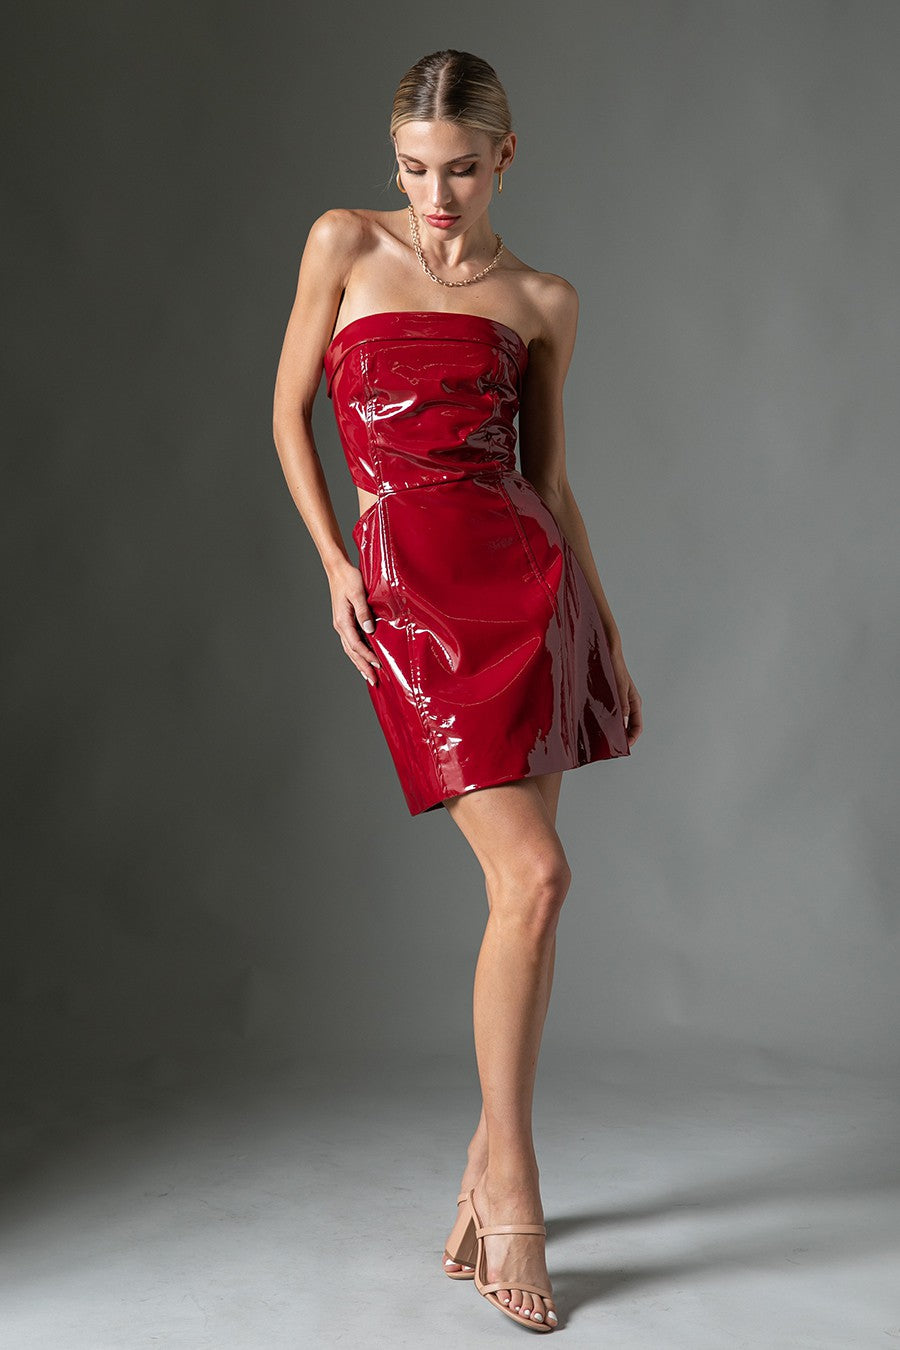 Patent leather cutout dress